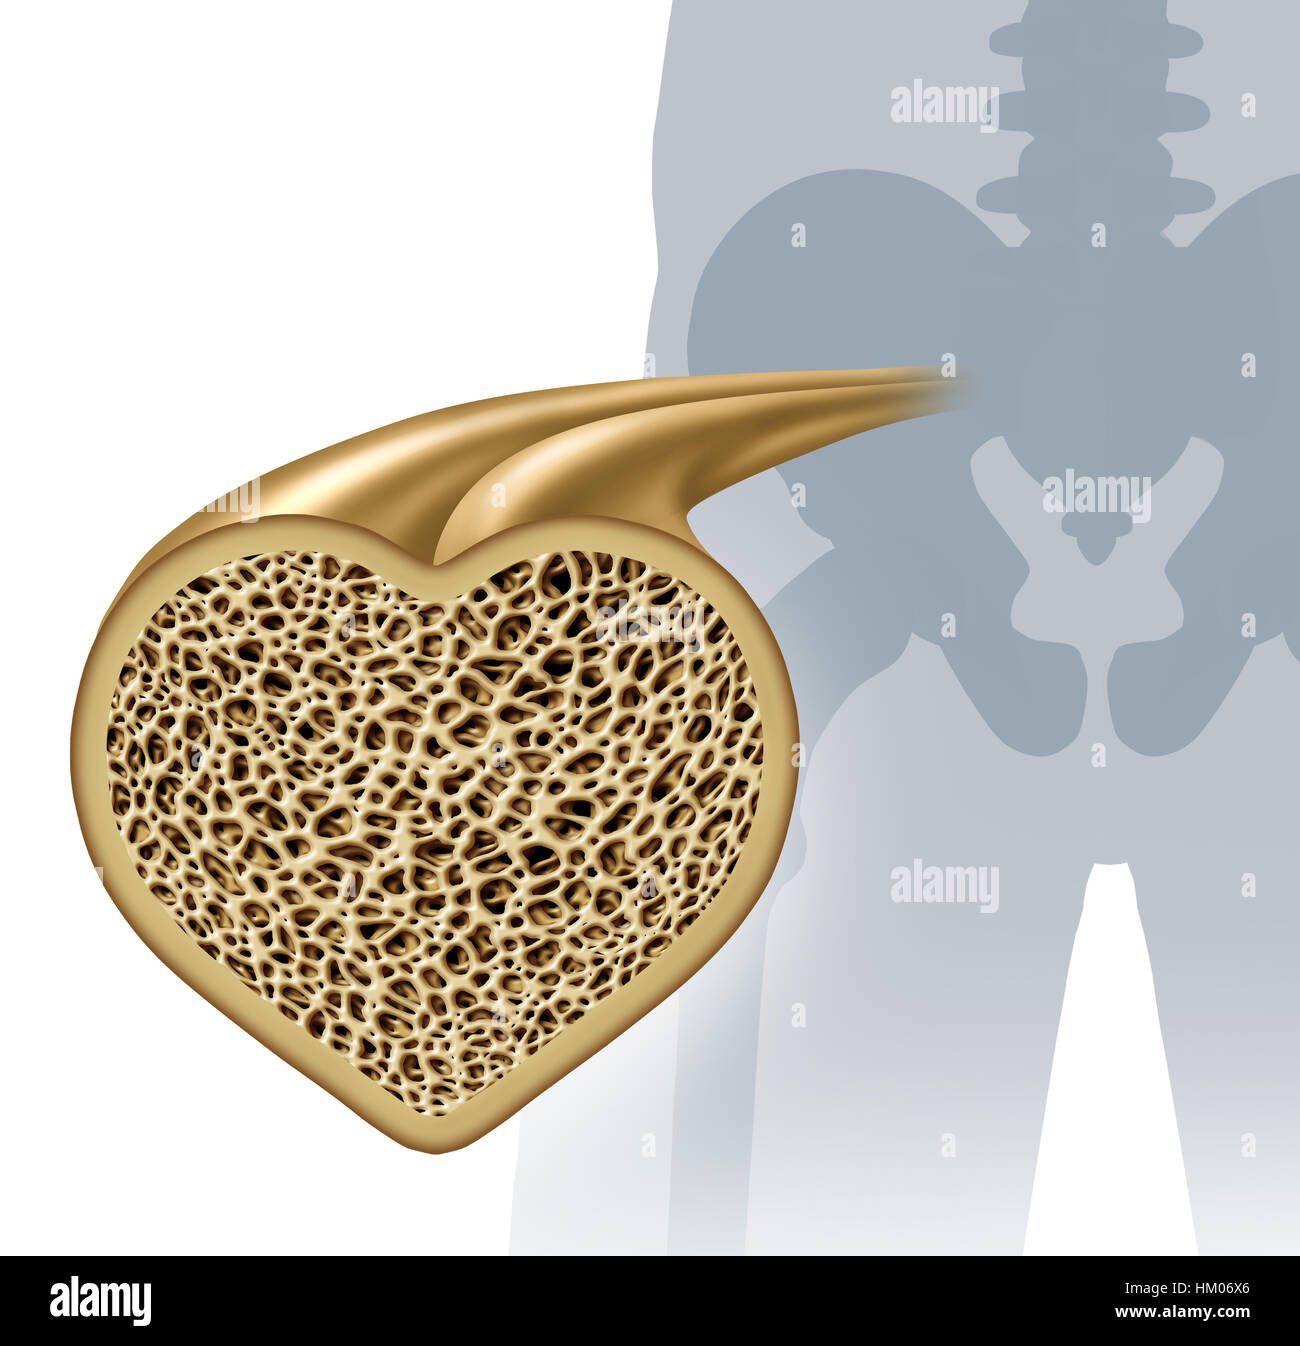 La salute delle ossa e osteoporosi il concetto di prevenzione come un sano anatomia in una forma di cuore come un forte normale tessuto spugnoso da uno scheletro umano struttura Foto Stock